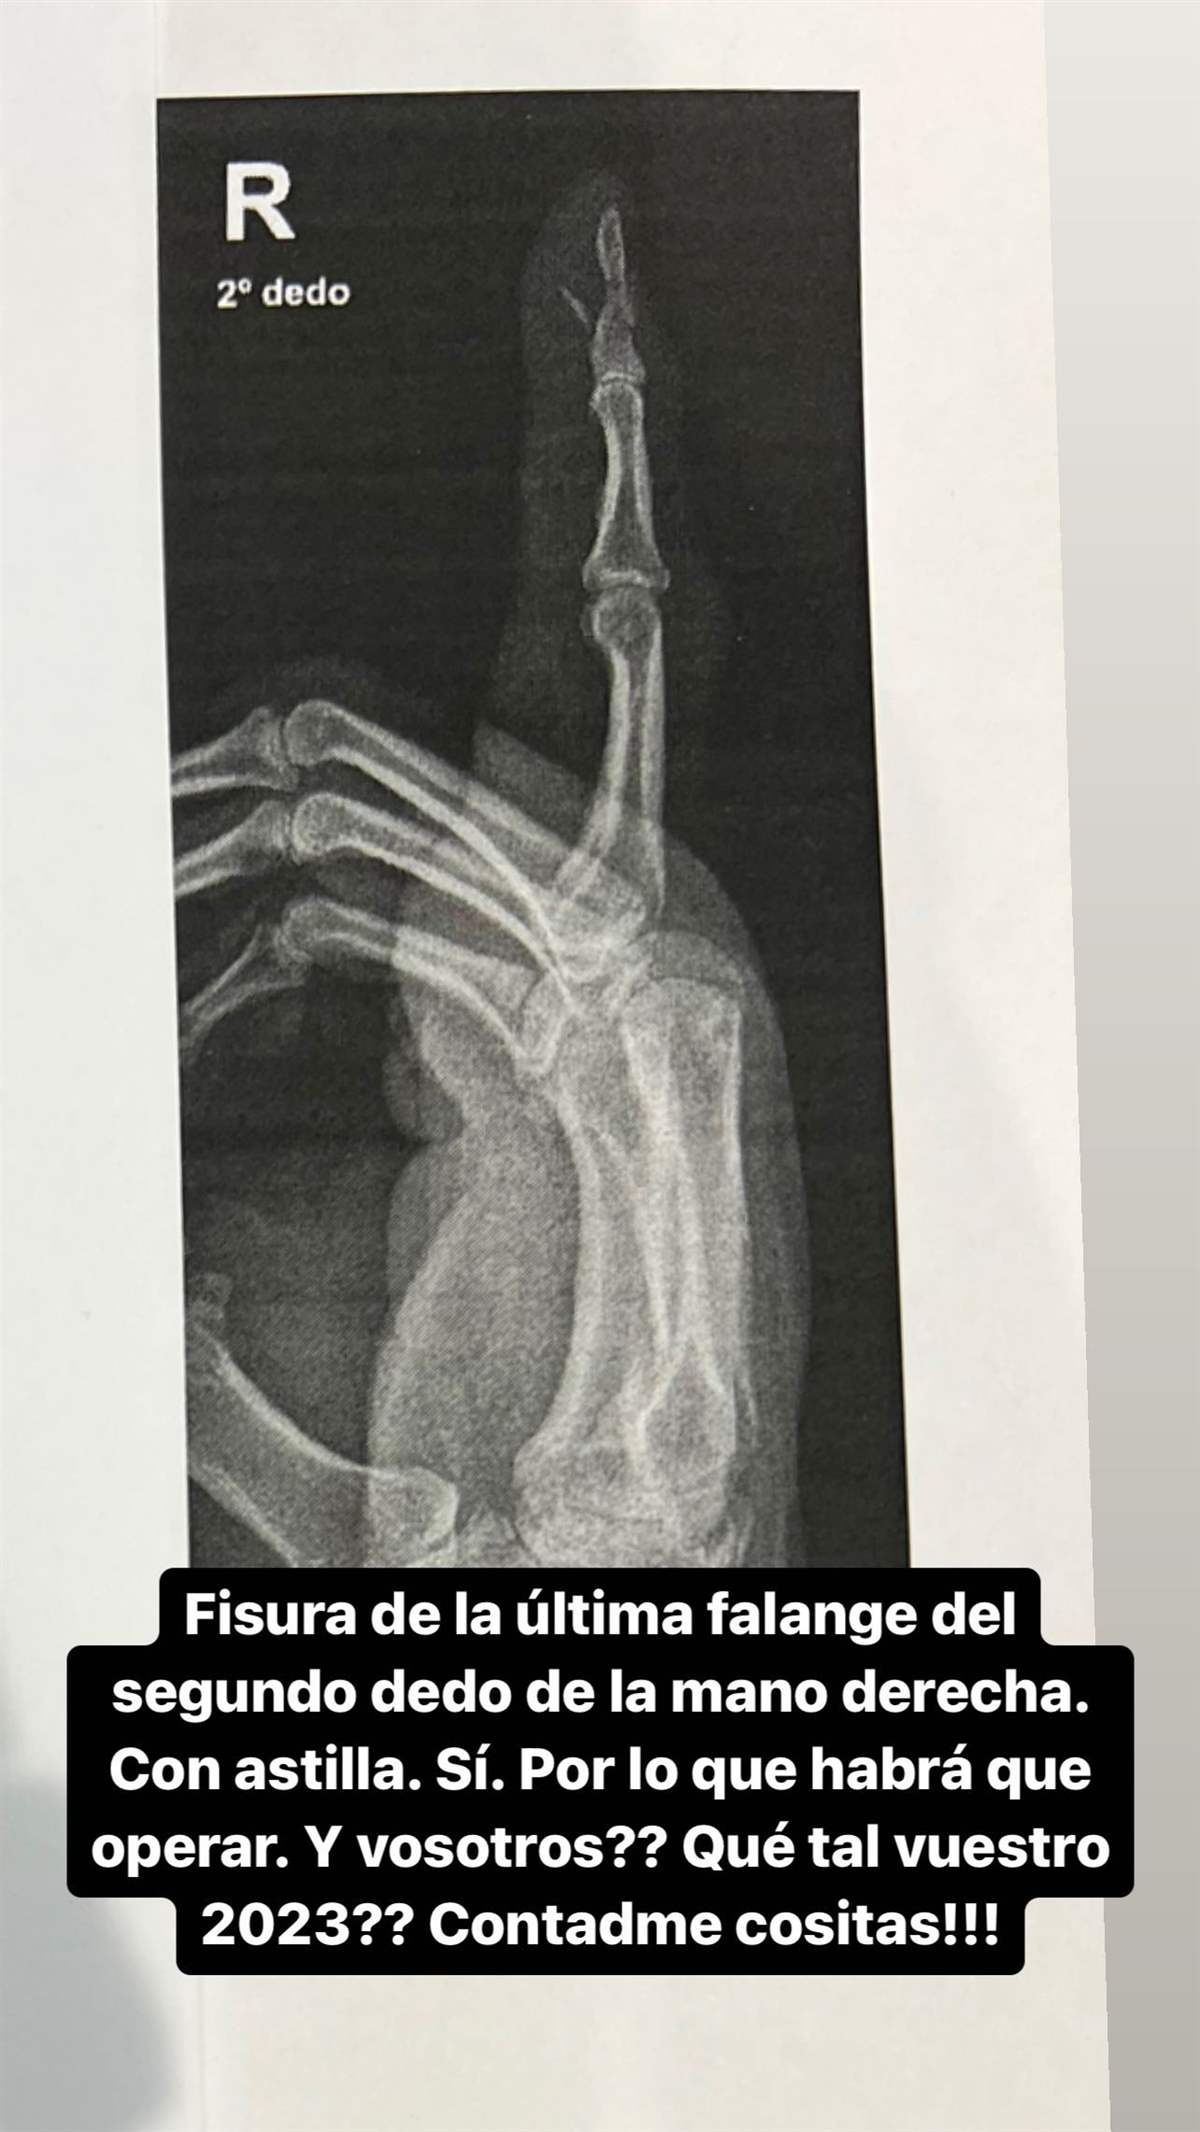 Radiografía del dedo roto de Risto Mejide.